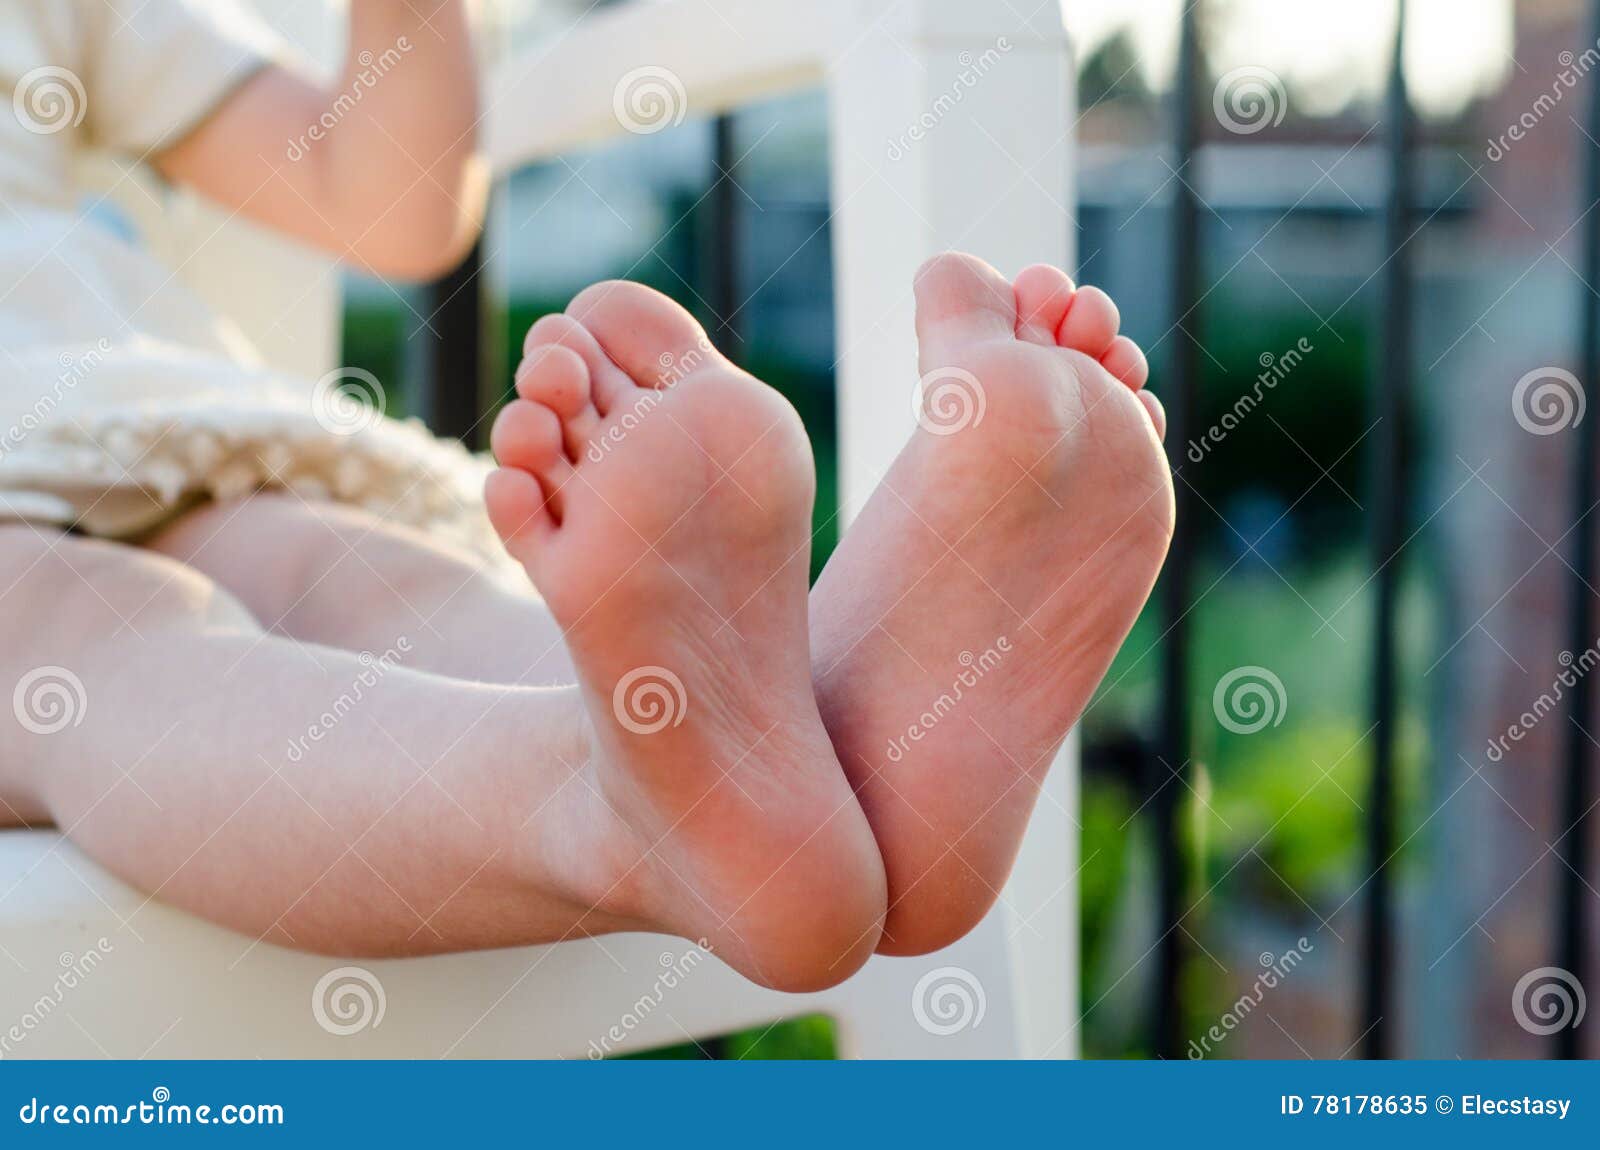 closeup of little girls bare feet